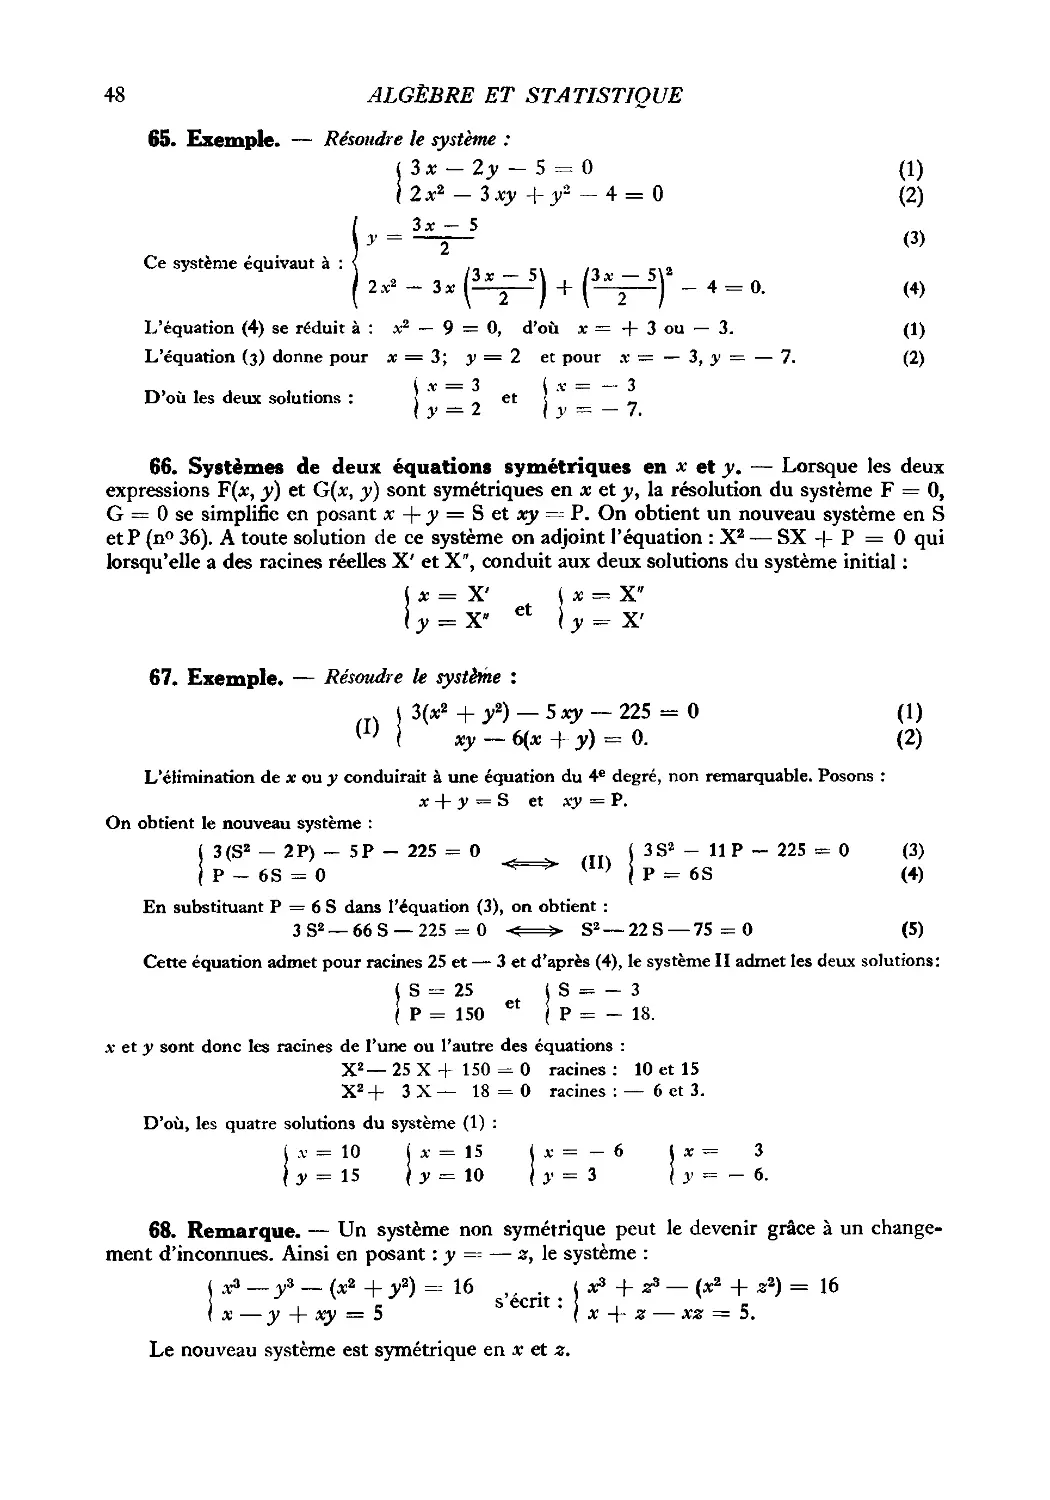 65. Exemple
66. Systèmes de deux équations symétriques en x et y
67. Exemple
68. Remarque